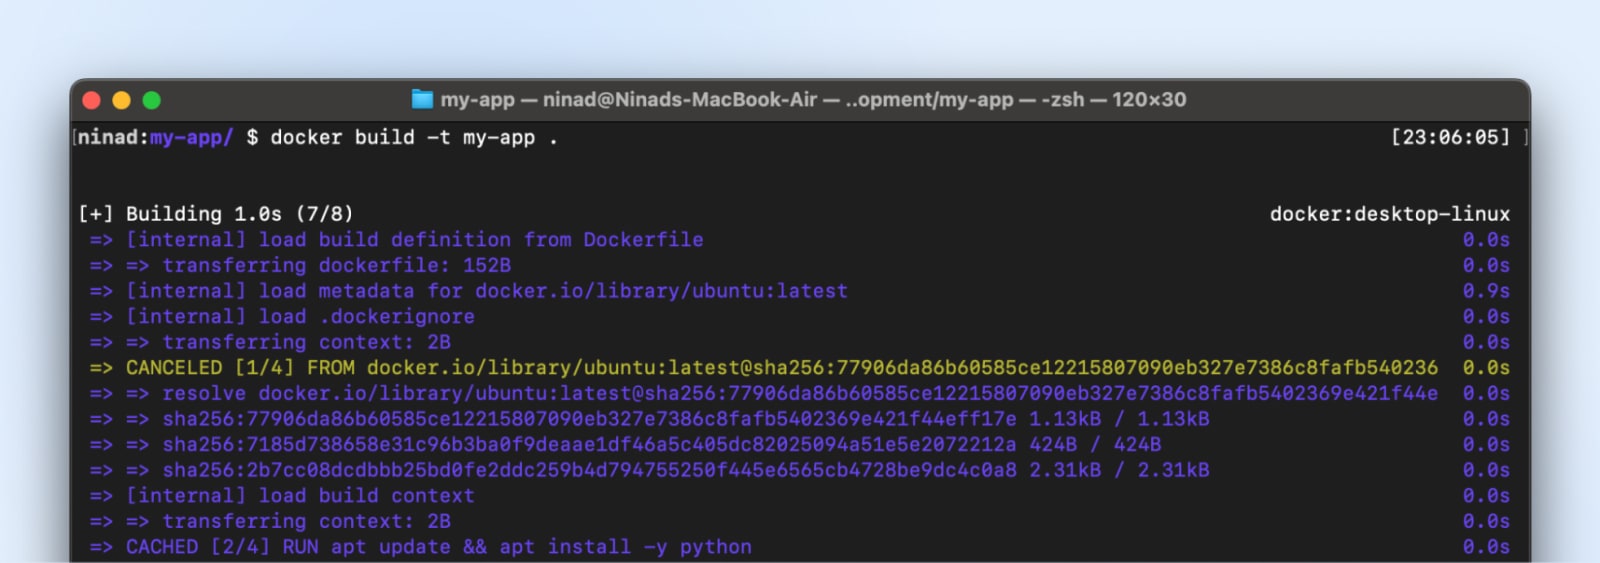 Código que presenta los comandos para crear la imagen en Dockerfile.